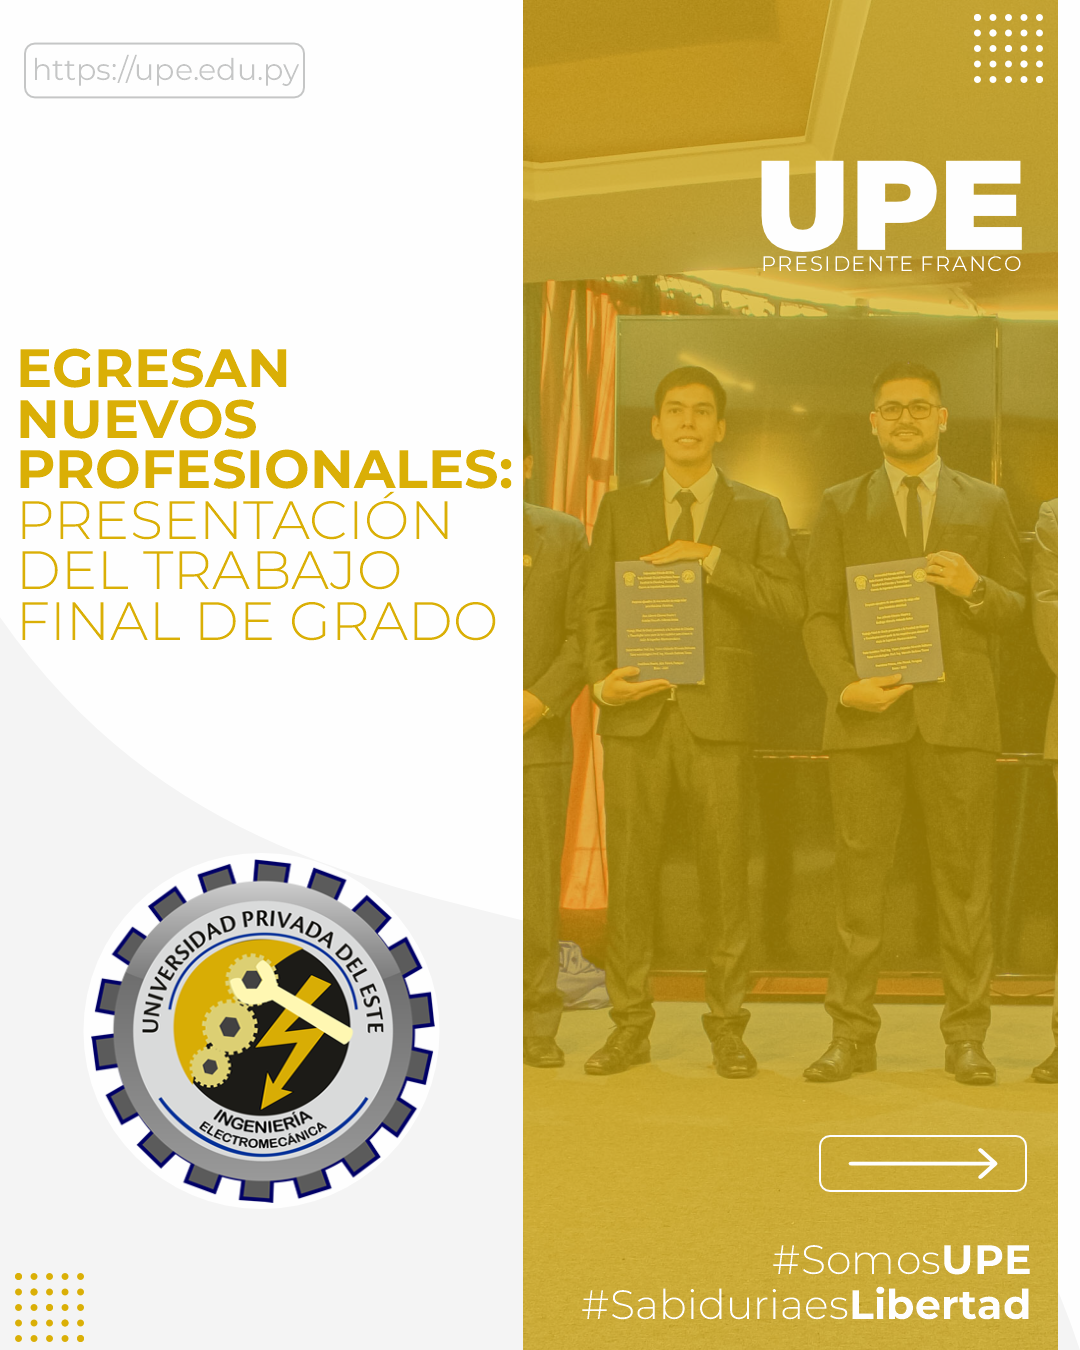 Nuevos Egresados de la UPE: Trabajo Final de Grado en Ingeniería Electromecánica